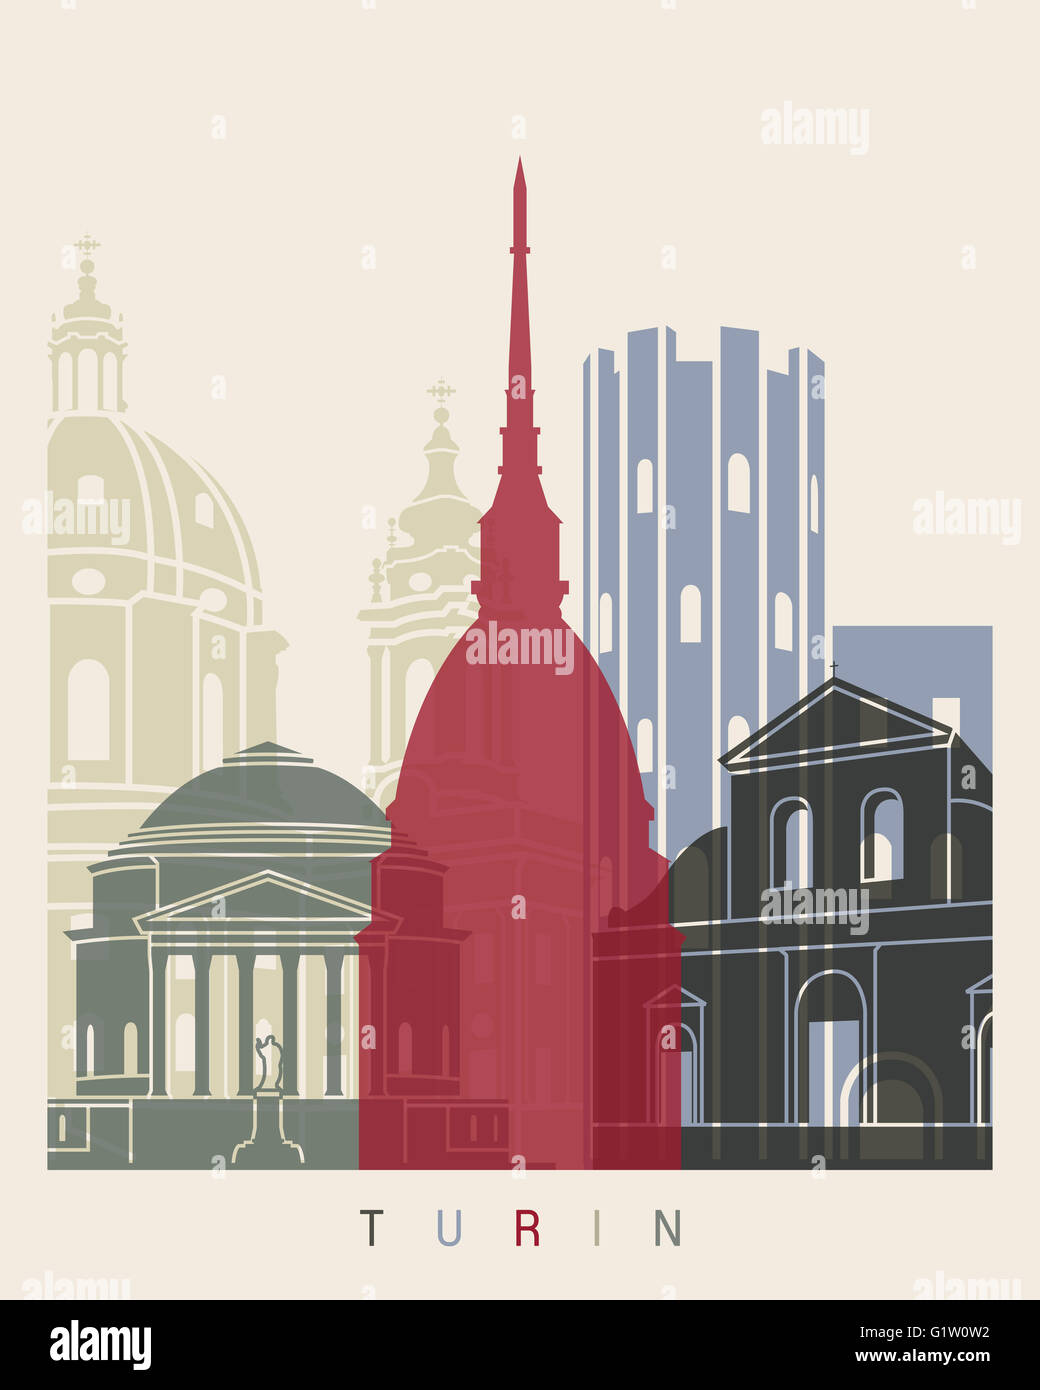 Dans l'affiche de la ville de Turin de fichier vectoriel éditable Banque D'Images